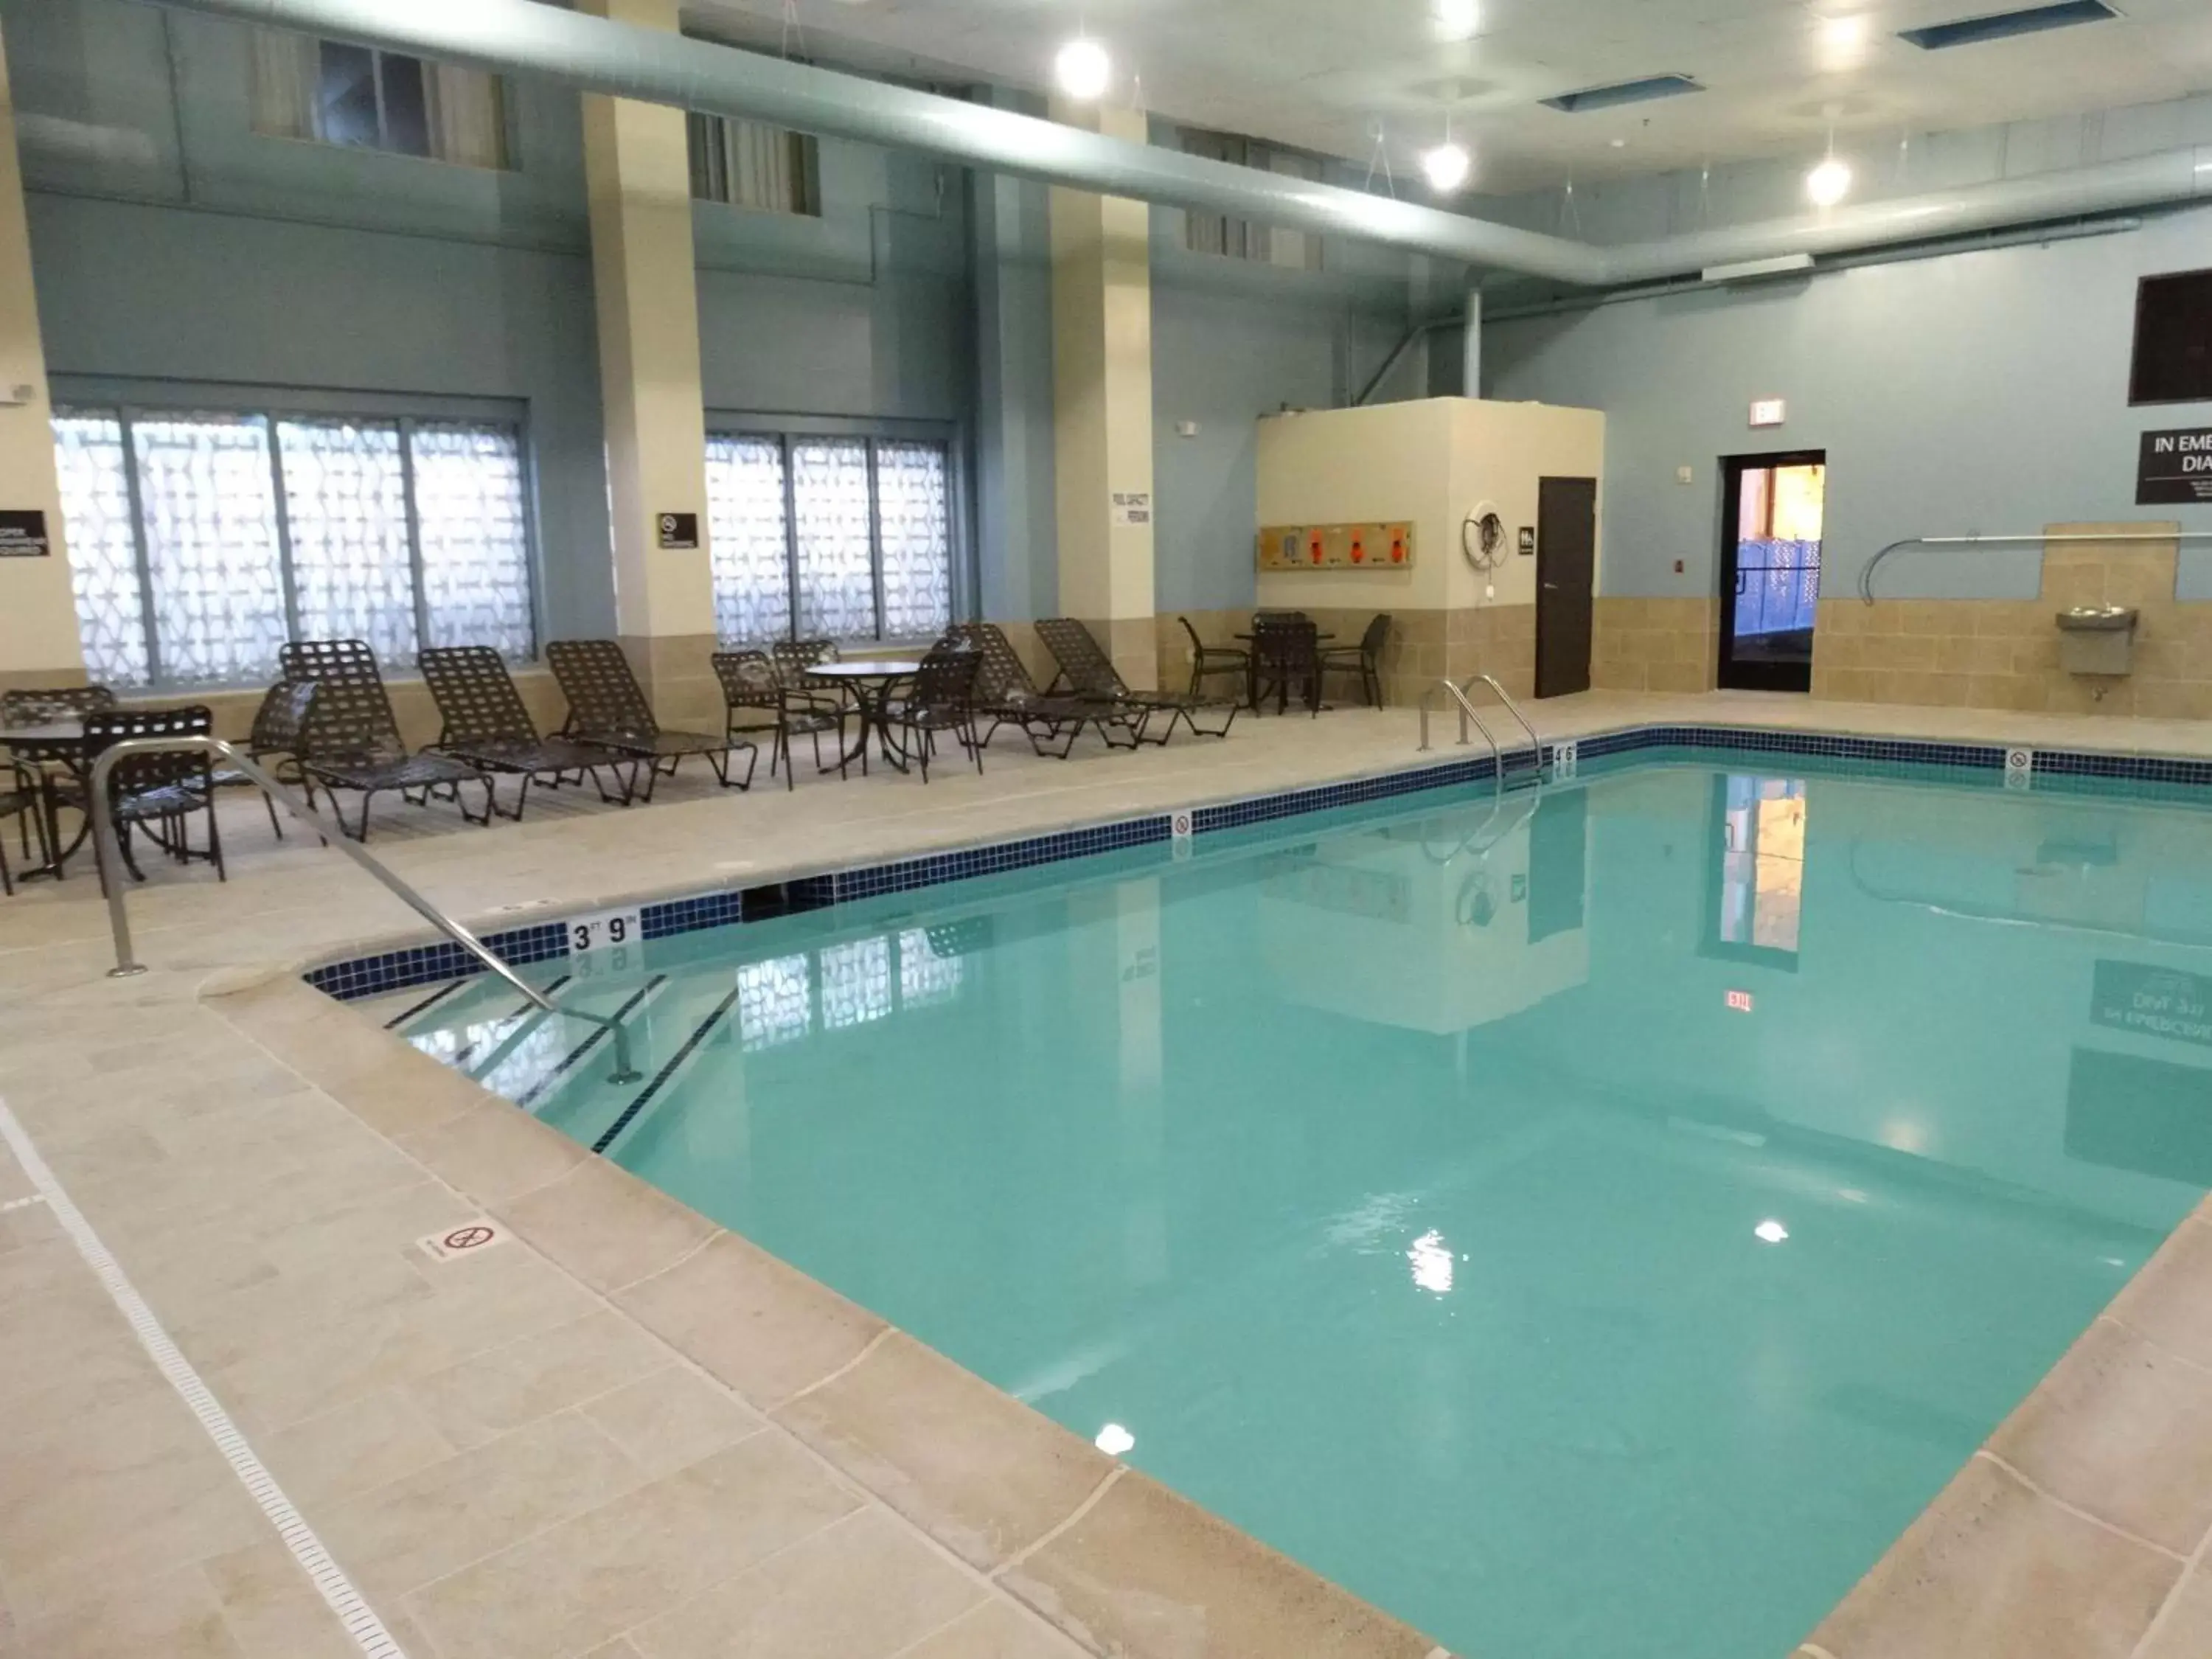 On site, Swimming Pool in Best Western Warren Hotel